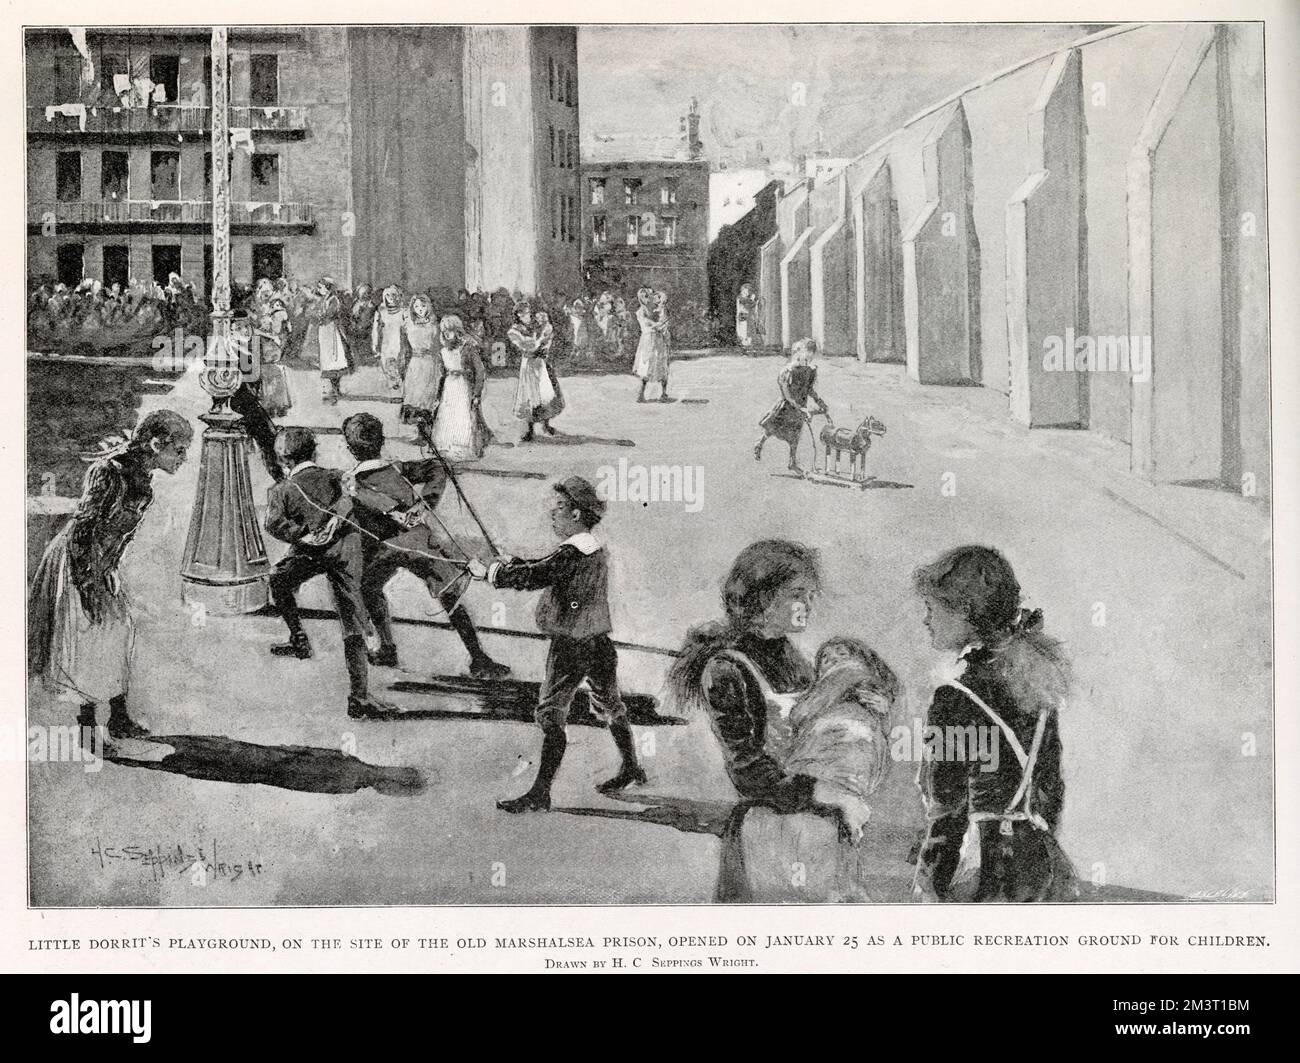 Ein öffentliches Erholungsgelände für Kinder, erbaut auf dem Gelände des Marshalsea Gefängnisses, eröffnet von Lord Monkswell am 25. Januar 1902 und benannt nach Charles Dickens Heldin, Little Dorritt, die an demselben Ort spielte. Stockfoto